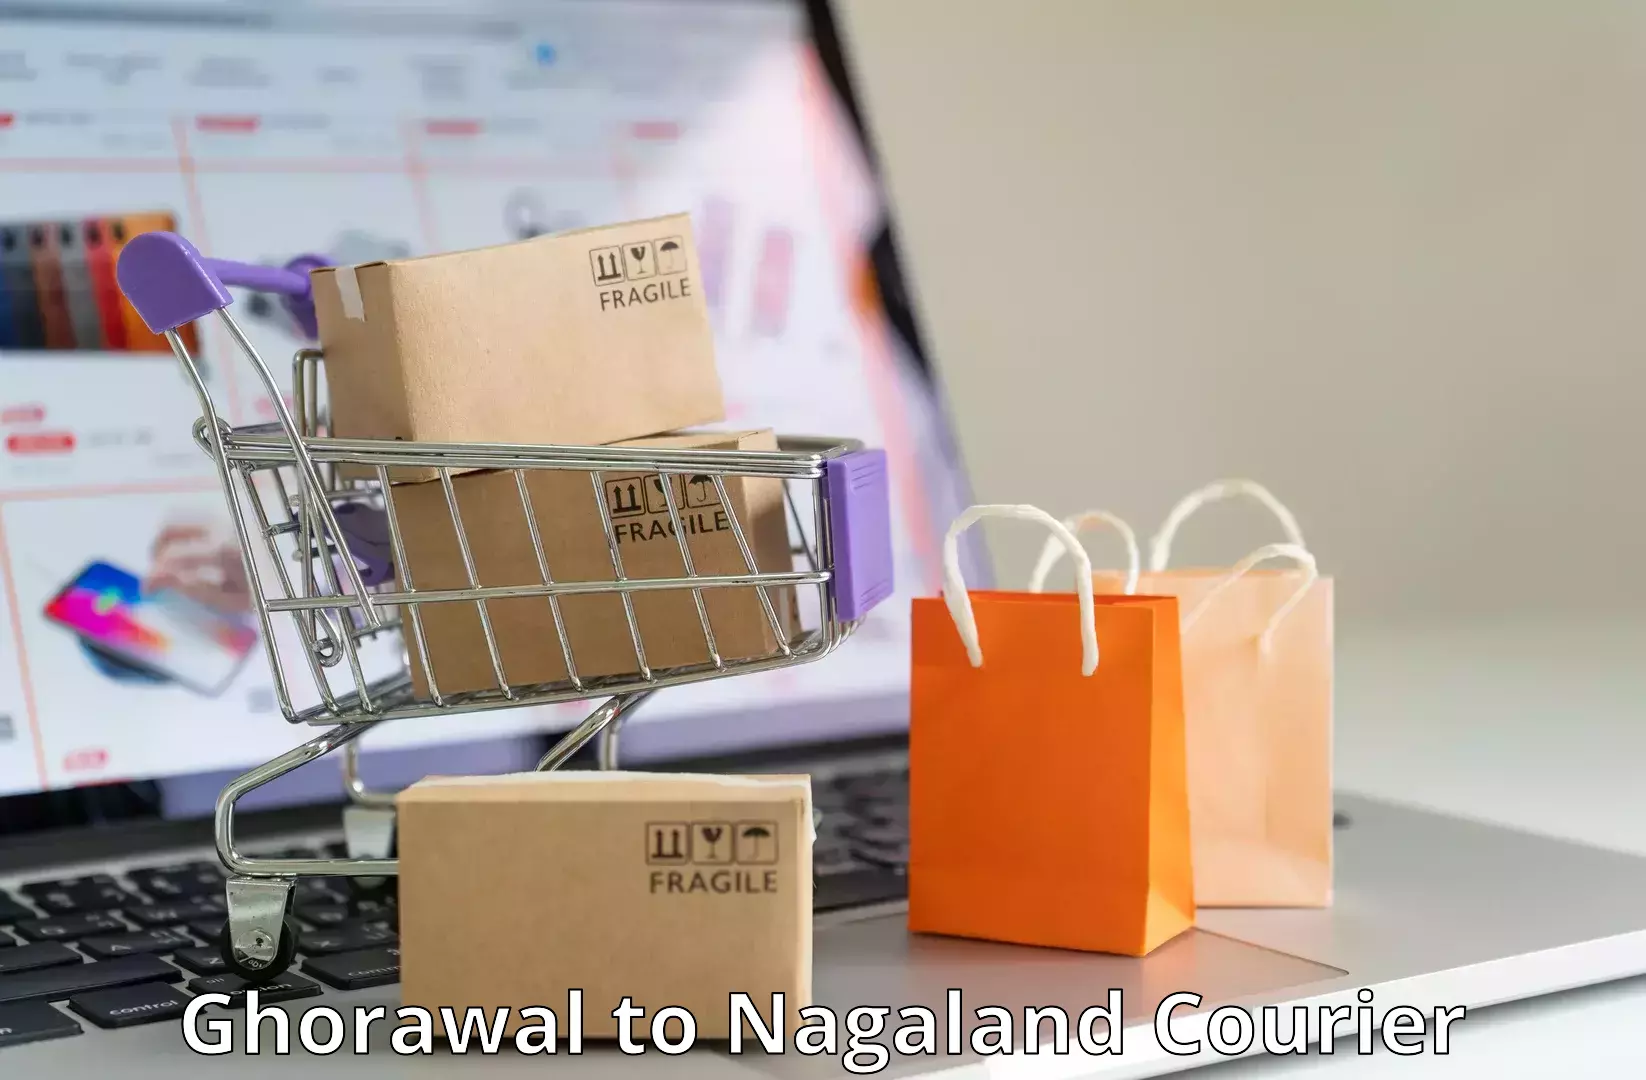 Express postal services Ghorawal to NIT Nagaland